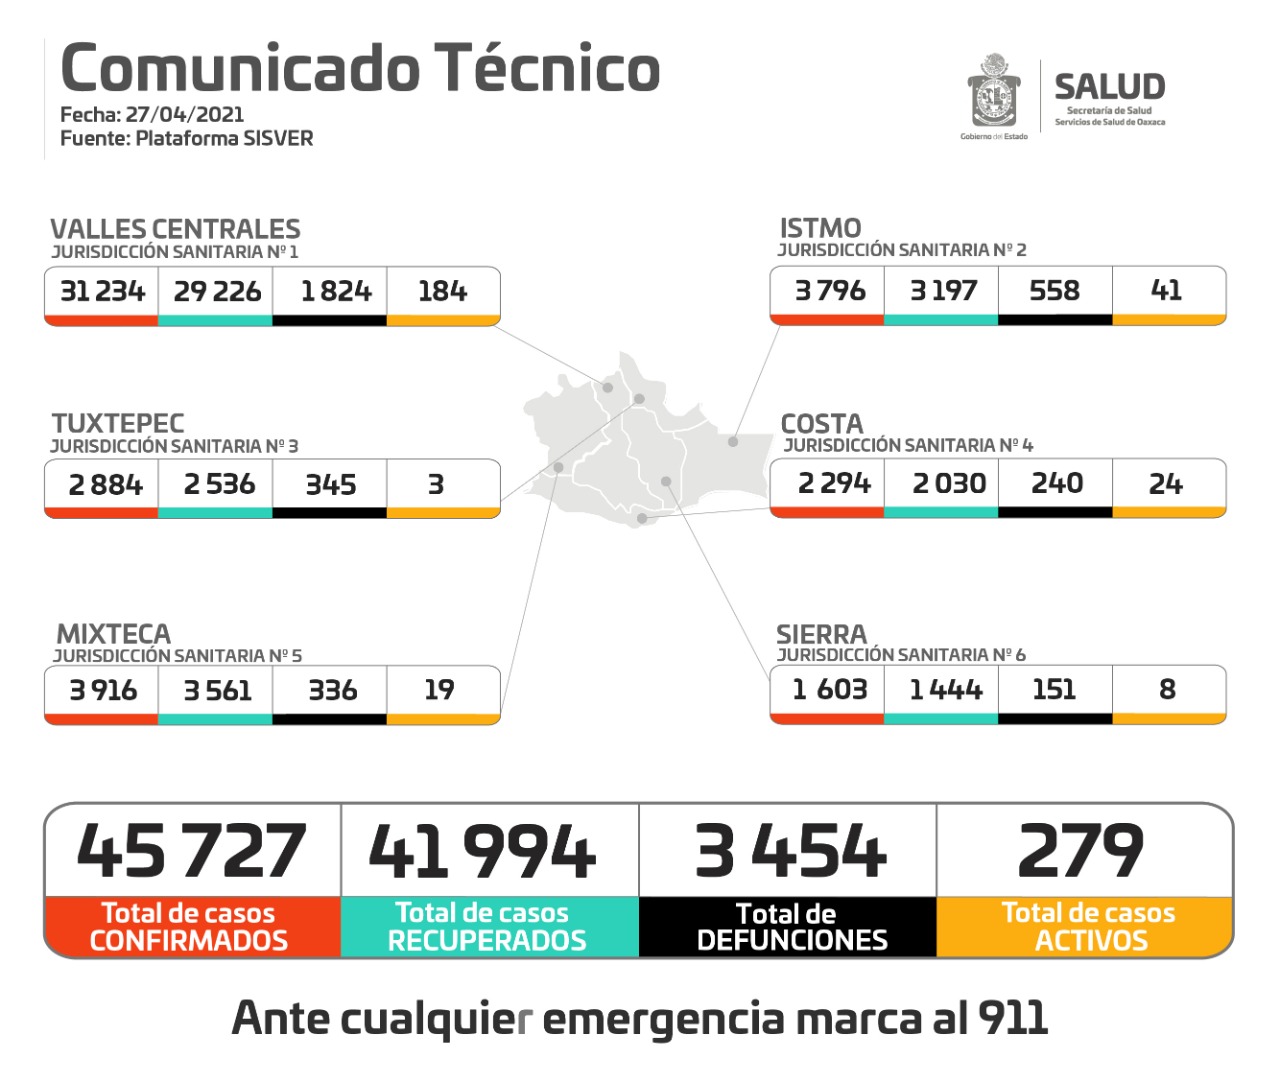 Registran 279 casos activos de Covid-19 en Oaxaca; Tres hospitales al 100% de ocupación